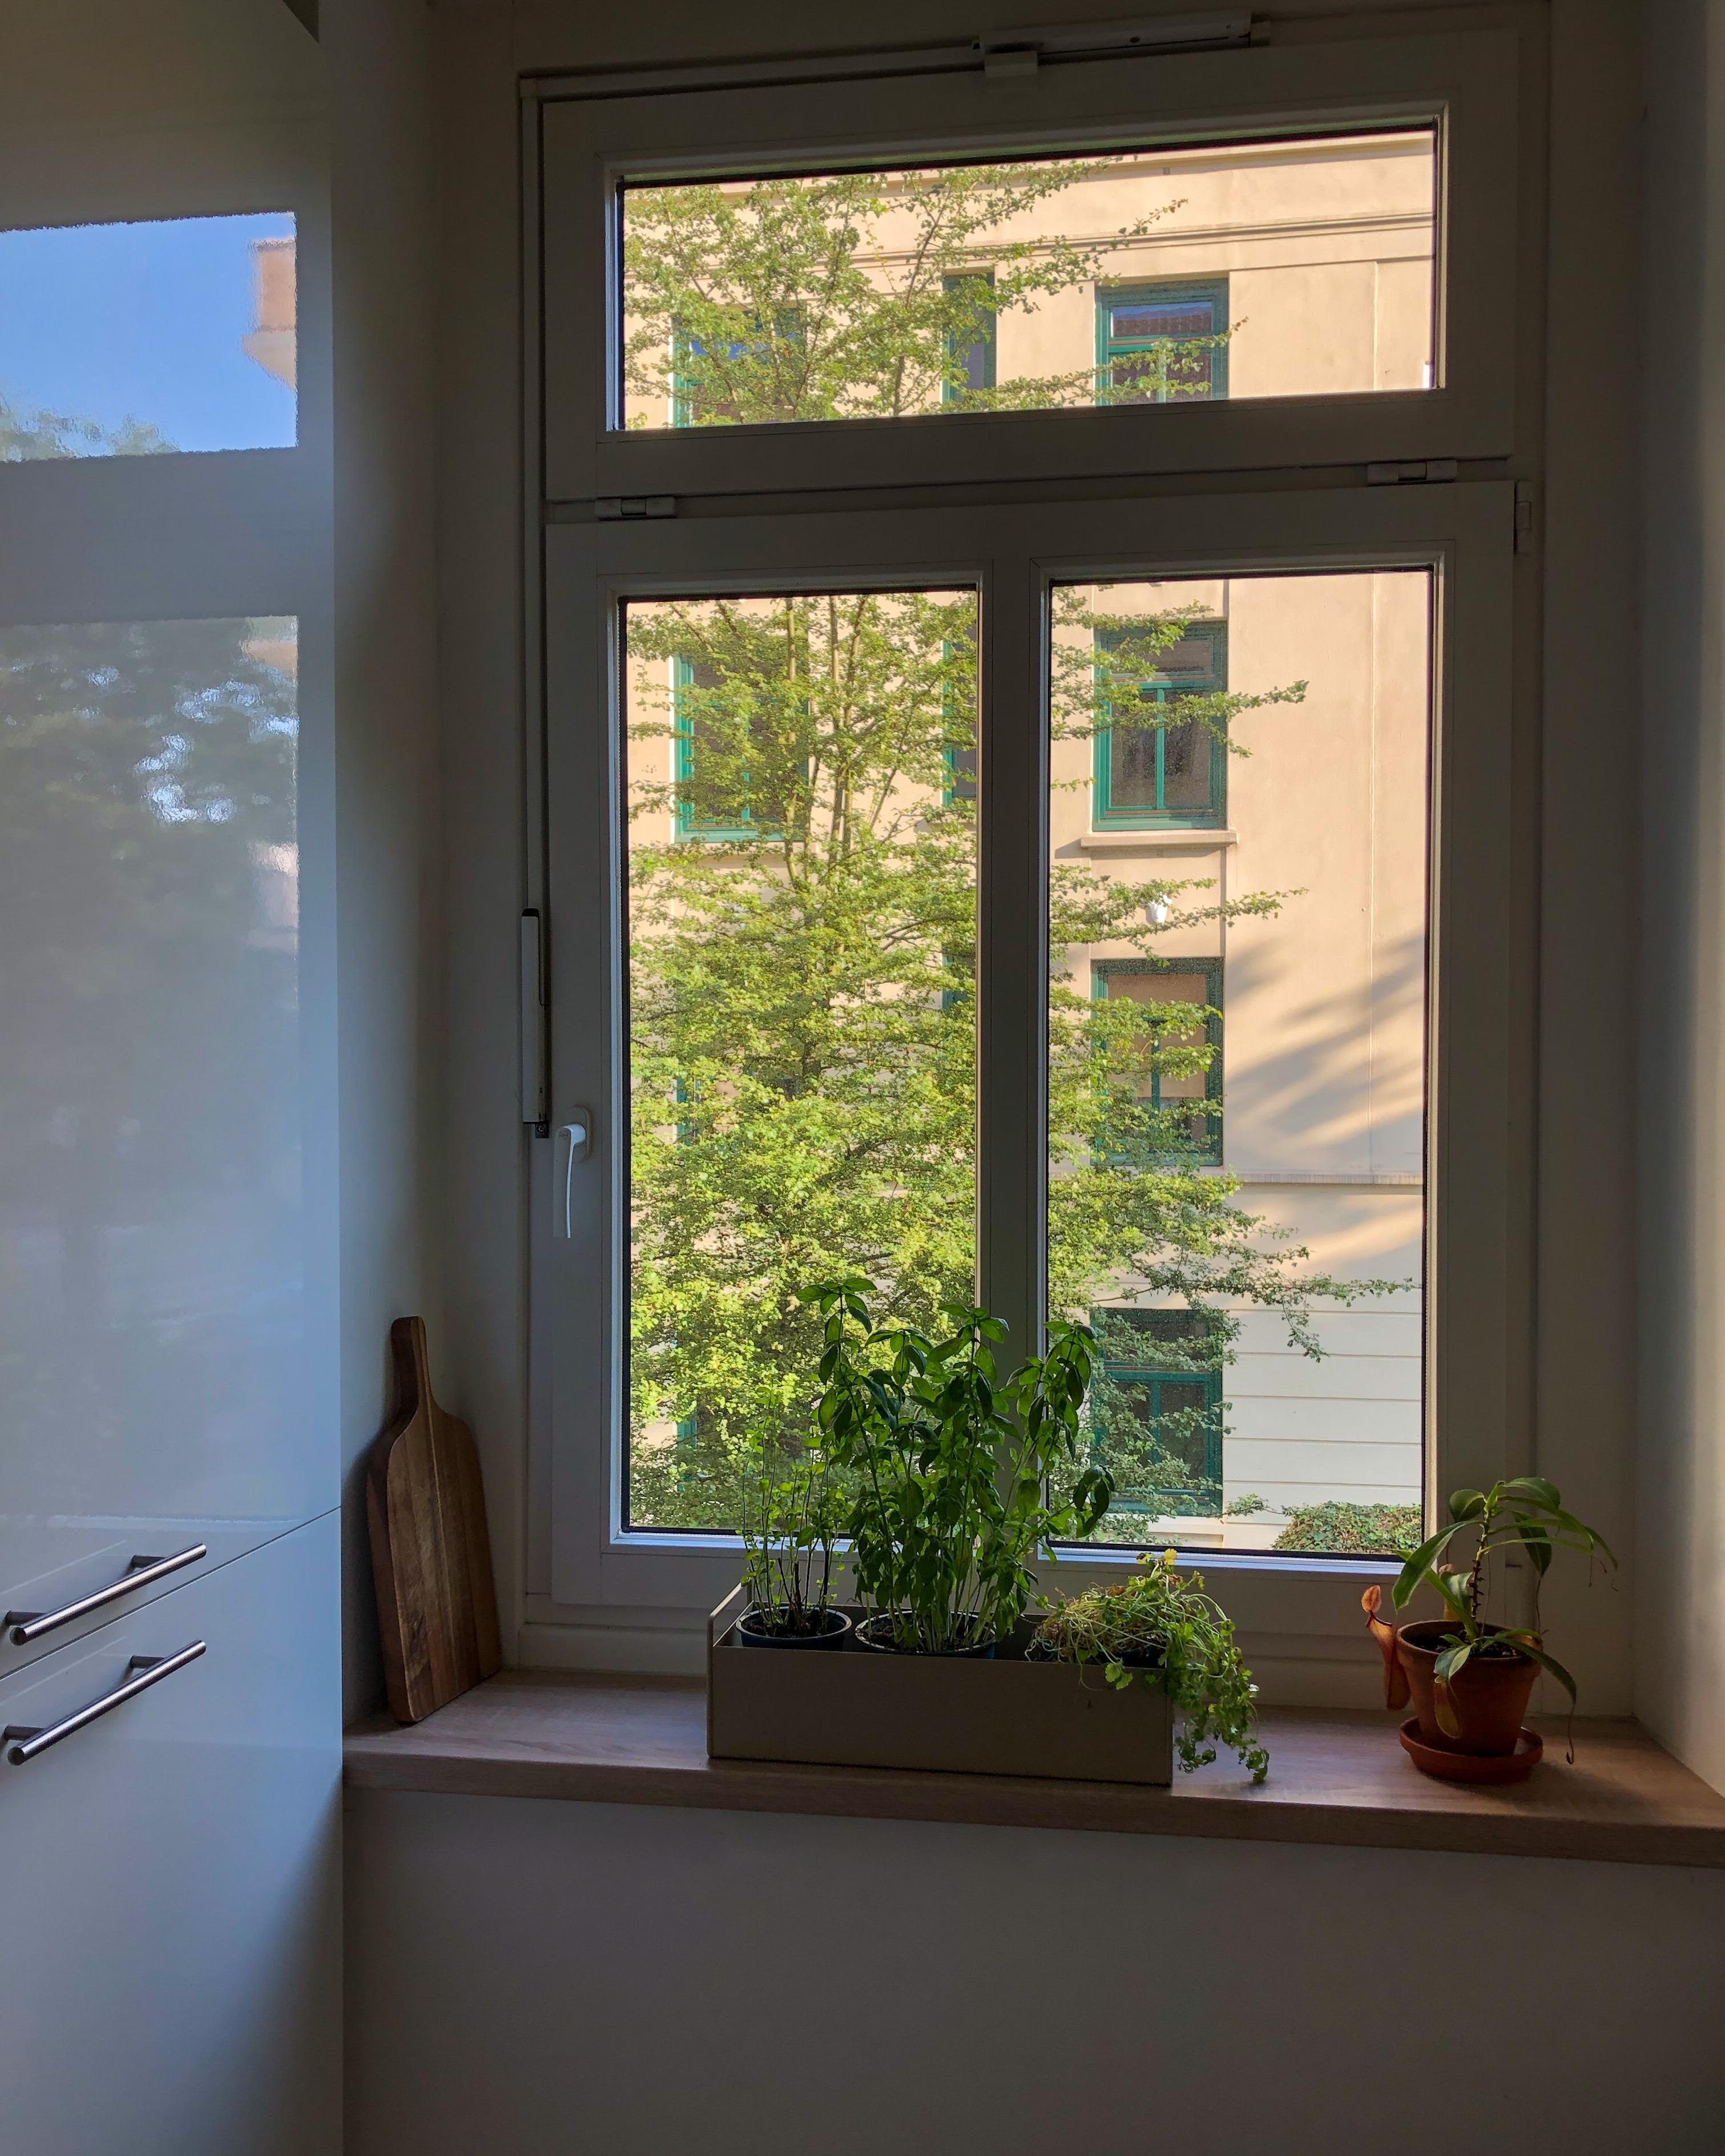 #küche #küchenfenster #plantbox #küchendetails #morgenröte #cleanliving #grossstadtwohnung #hamburginterior